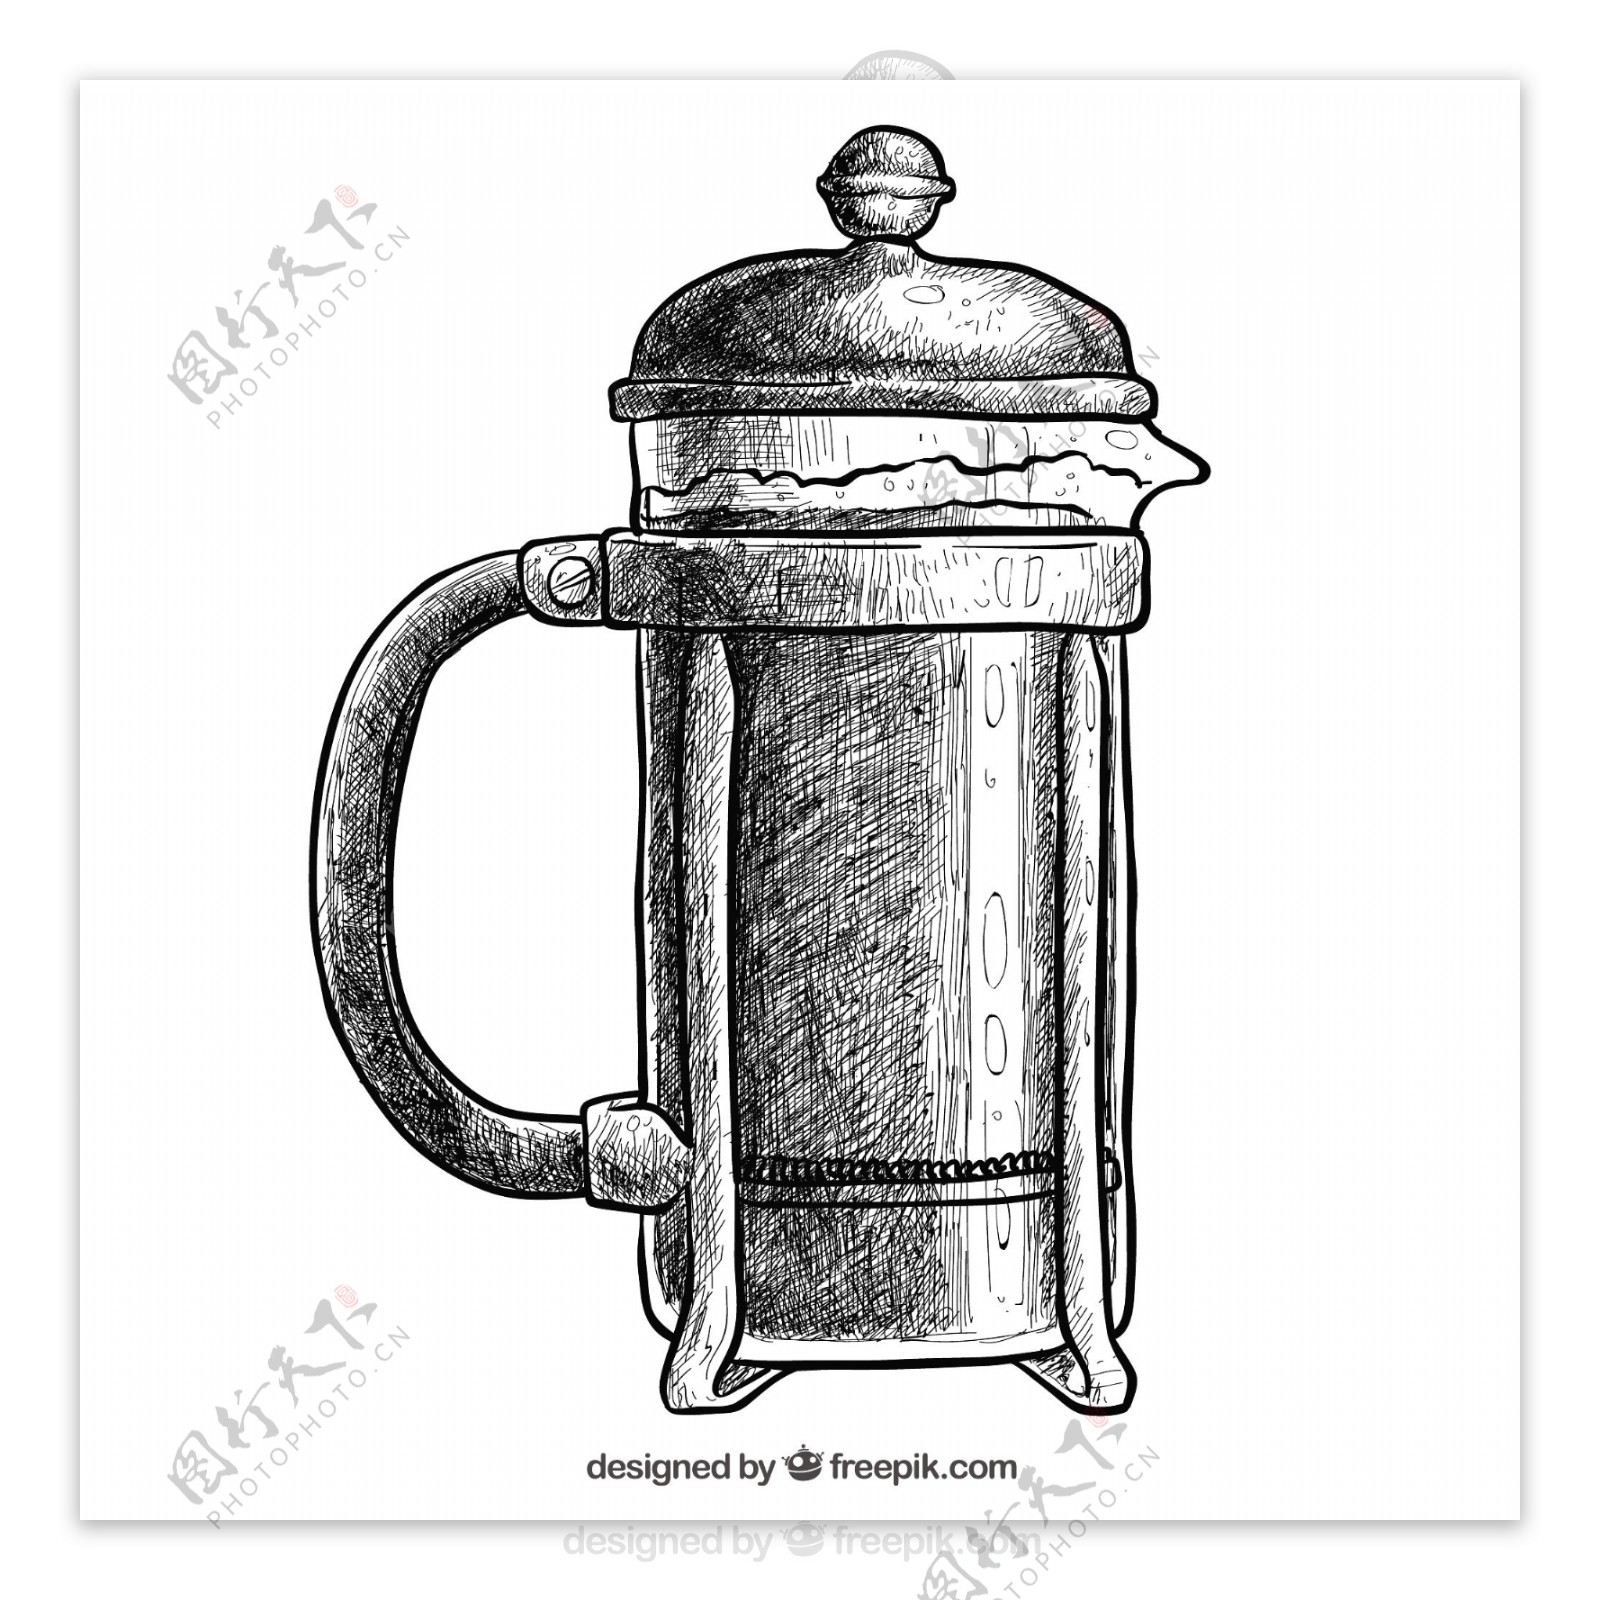 手绘复古法国咖啡壶